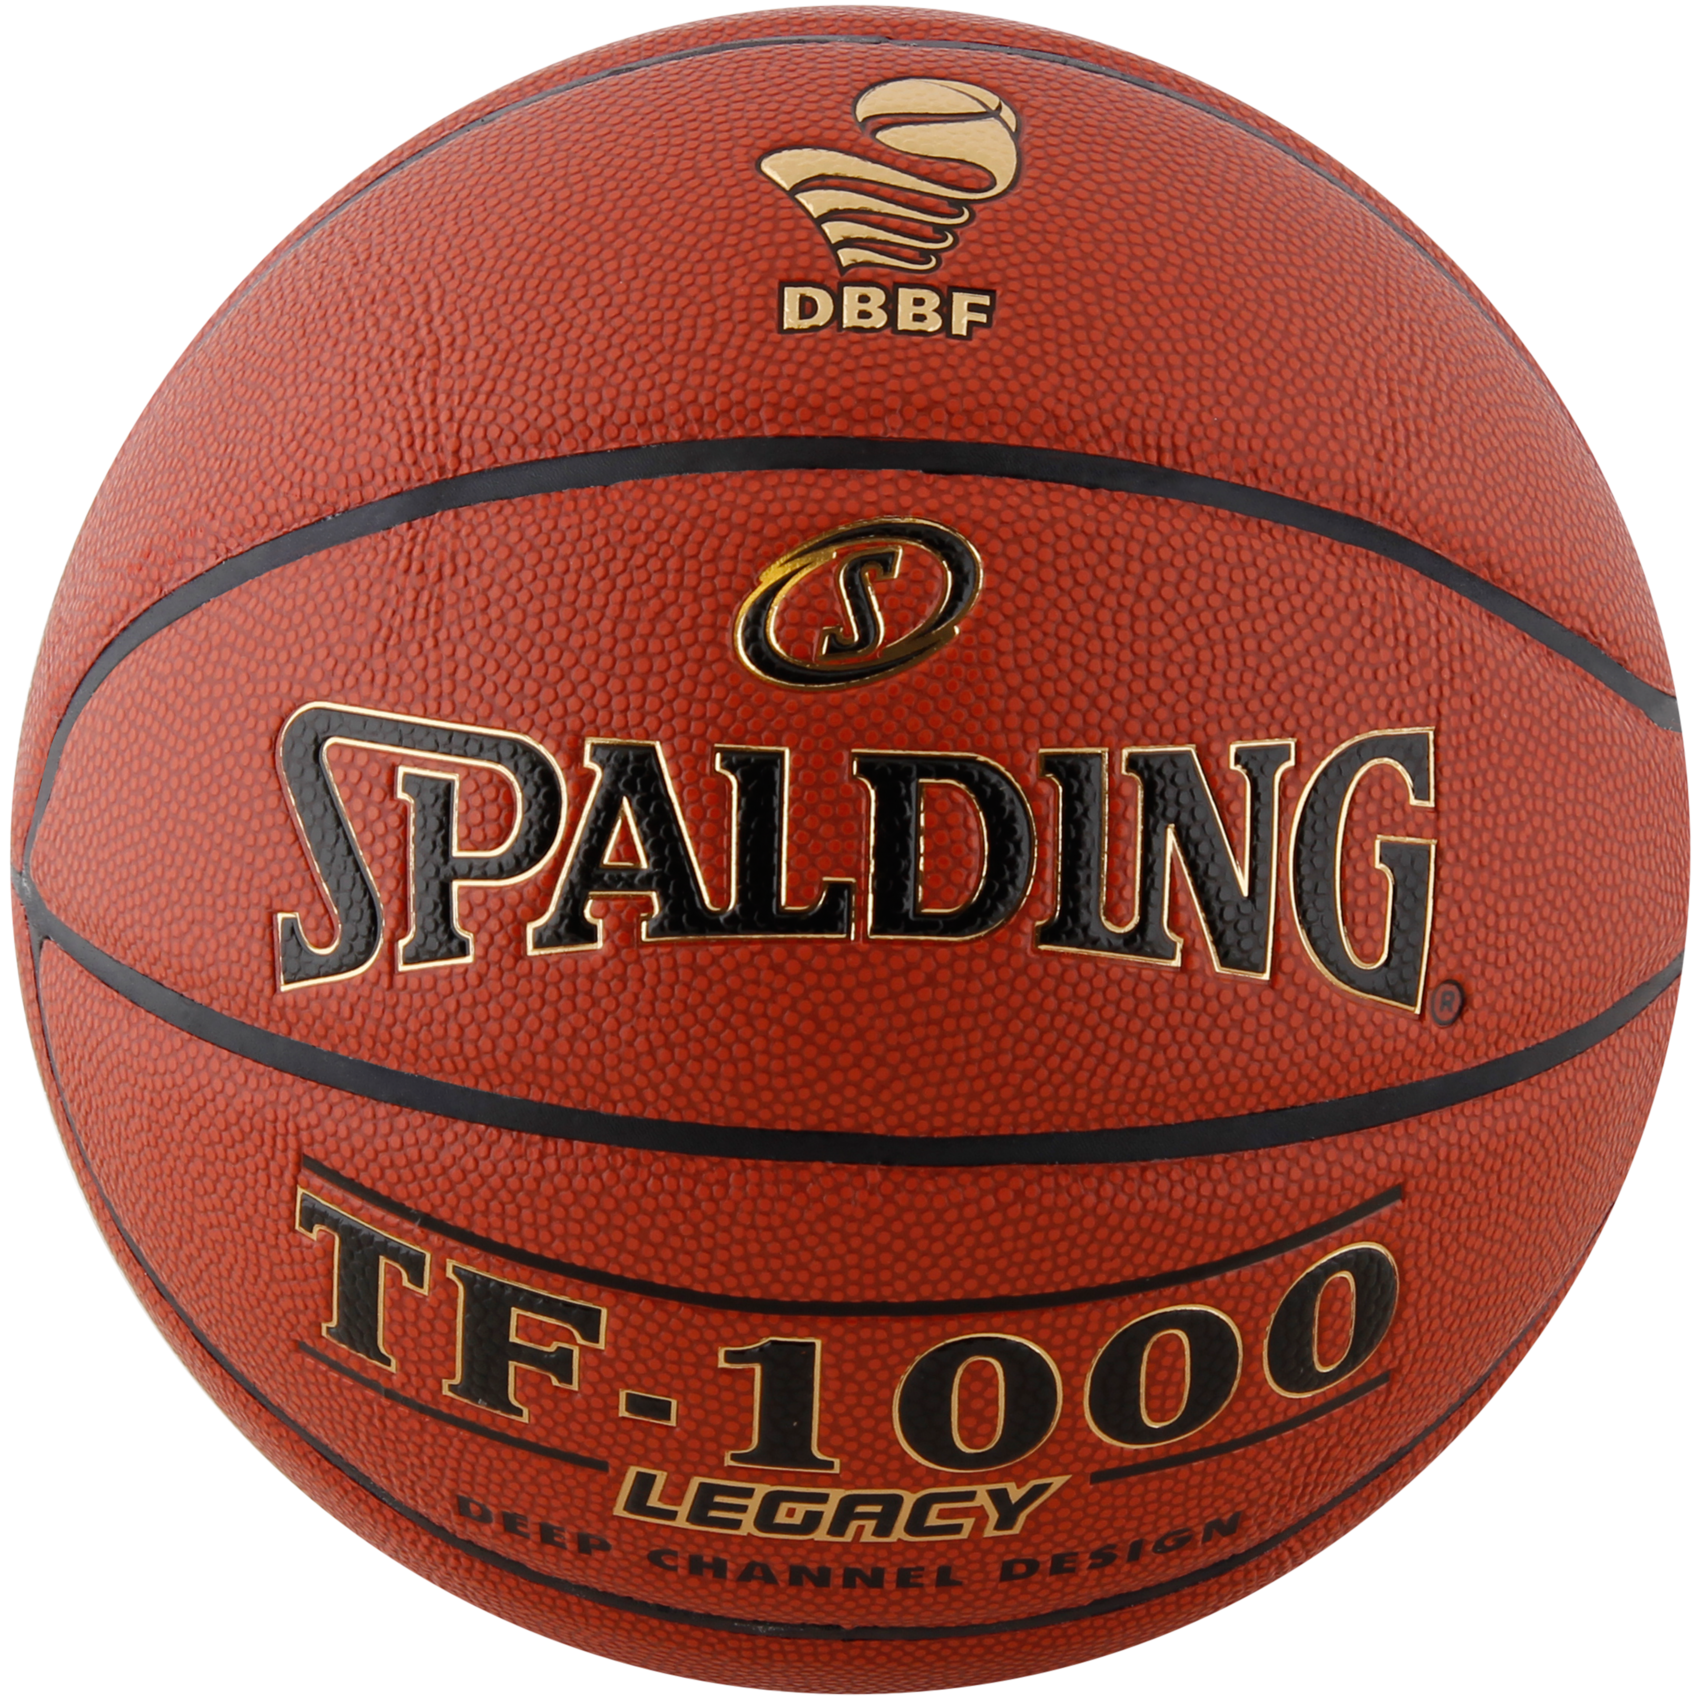 køkken kom videre Playful Køb Spalding DBBF TF-1000 Legacy Basketball - Size 7 til Herre | Dame |  Børn i Nocolor til 750 kr | SPORTMASTER